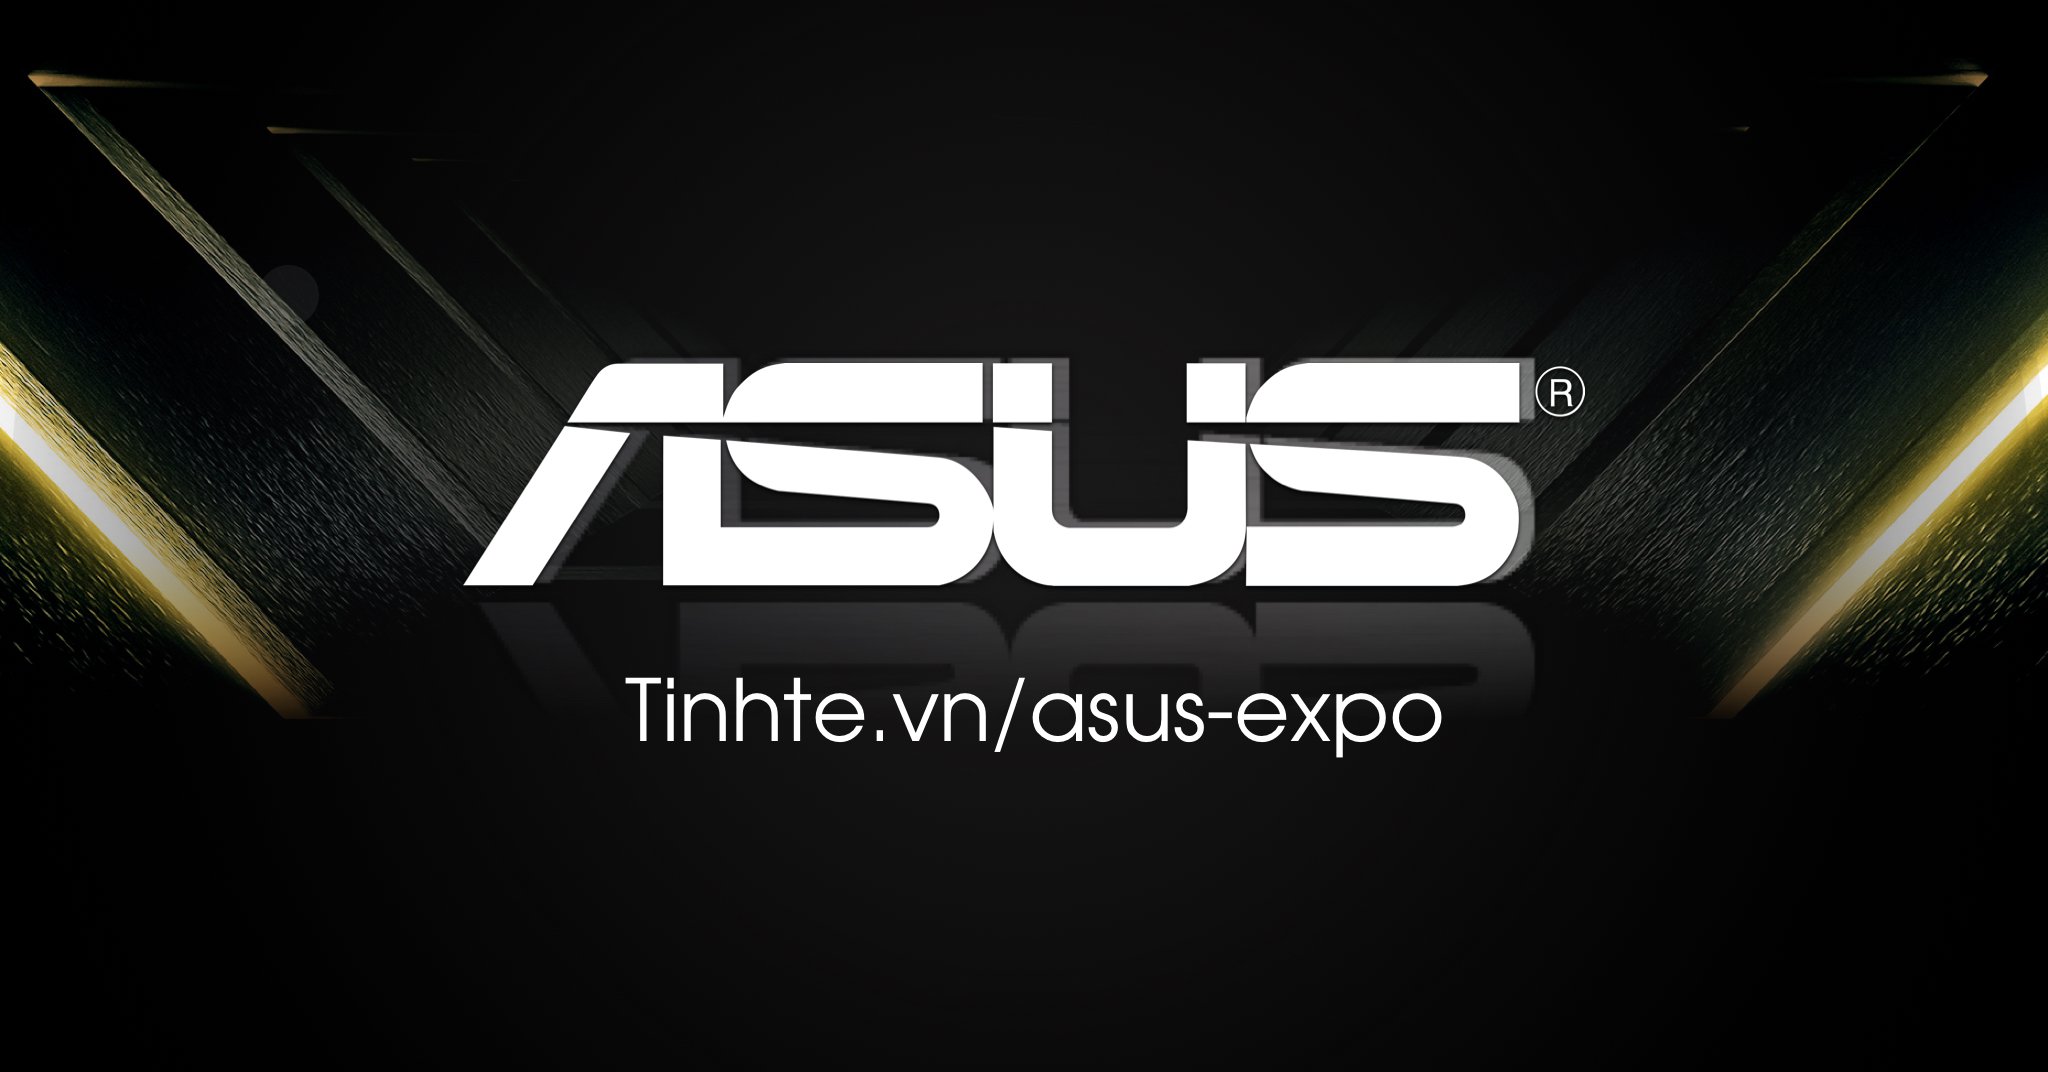 Giới thiệu cộng đồng Asus và các sản phẩm sẽ có tại triển lãm Asus Expo 2019